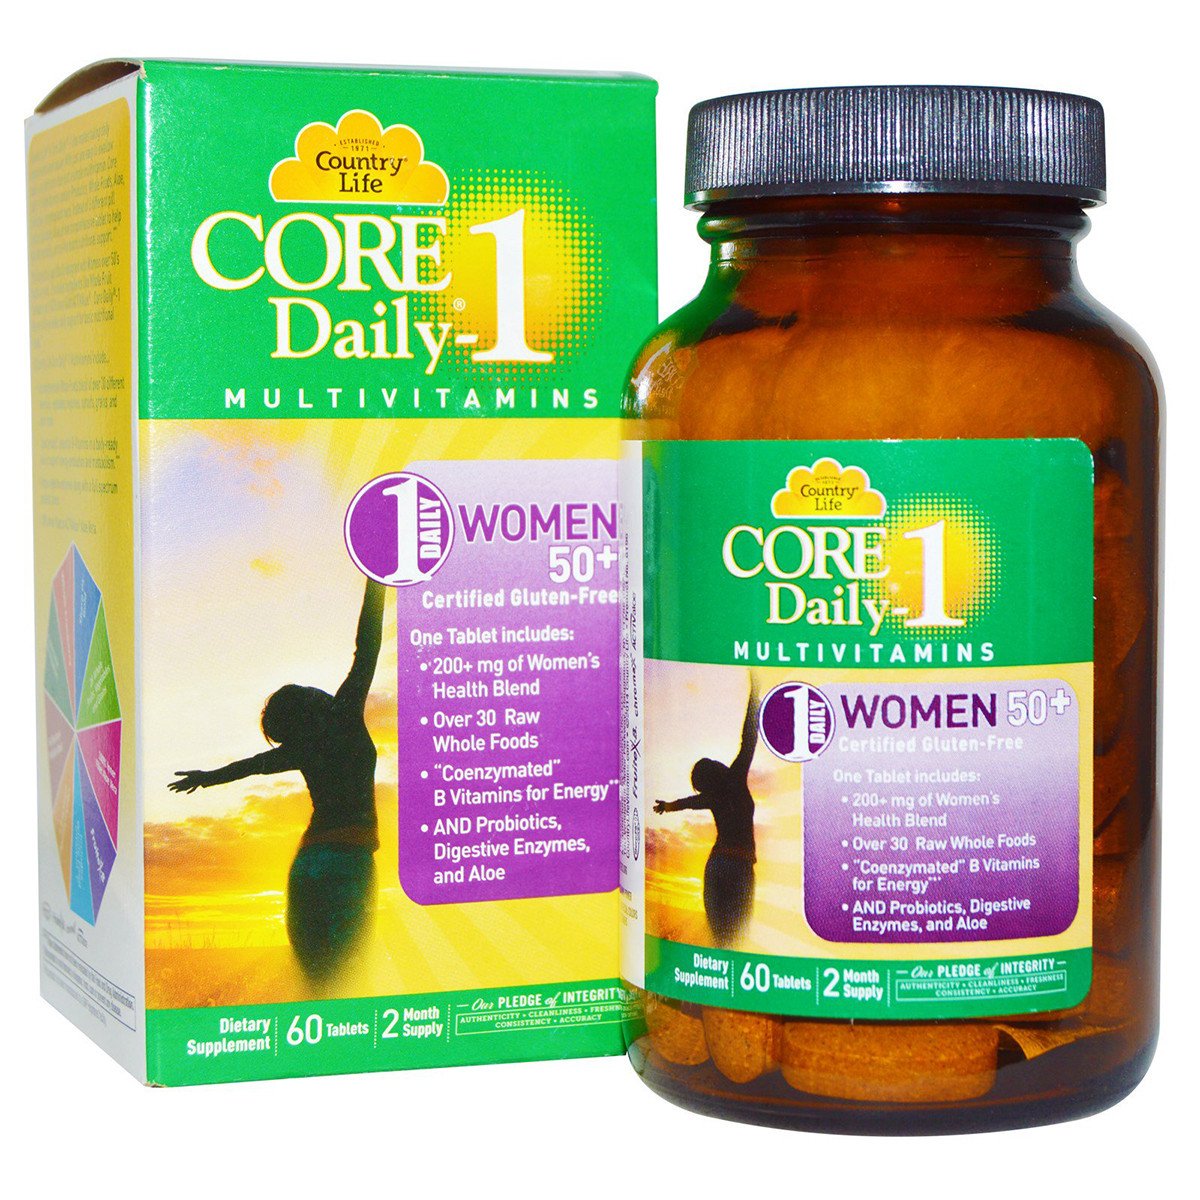 Мультивитамины для Женщин, 50+, Core Daily-1 for Women 50+, Country Life, 60 таблеток,  мл, Country Life. Витамины и минералы. Поддержание здоровья Укрепление иммунитета 